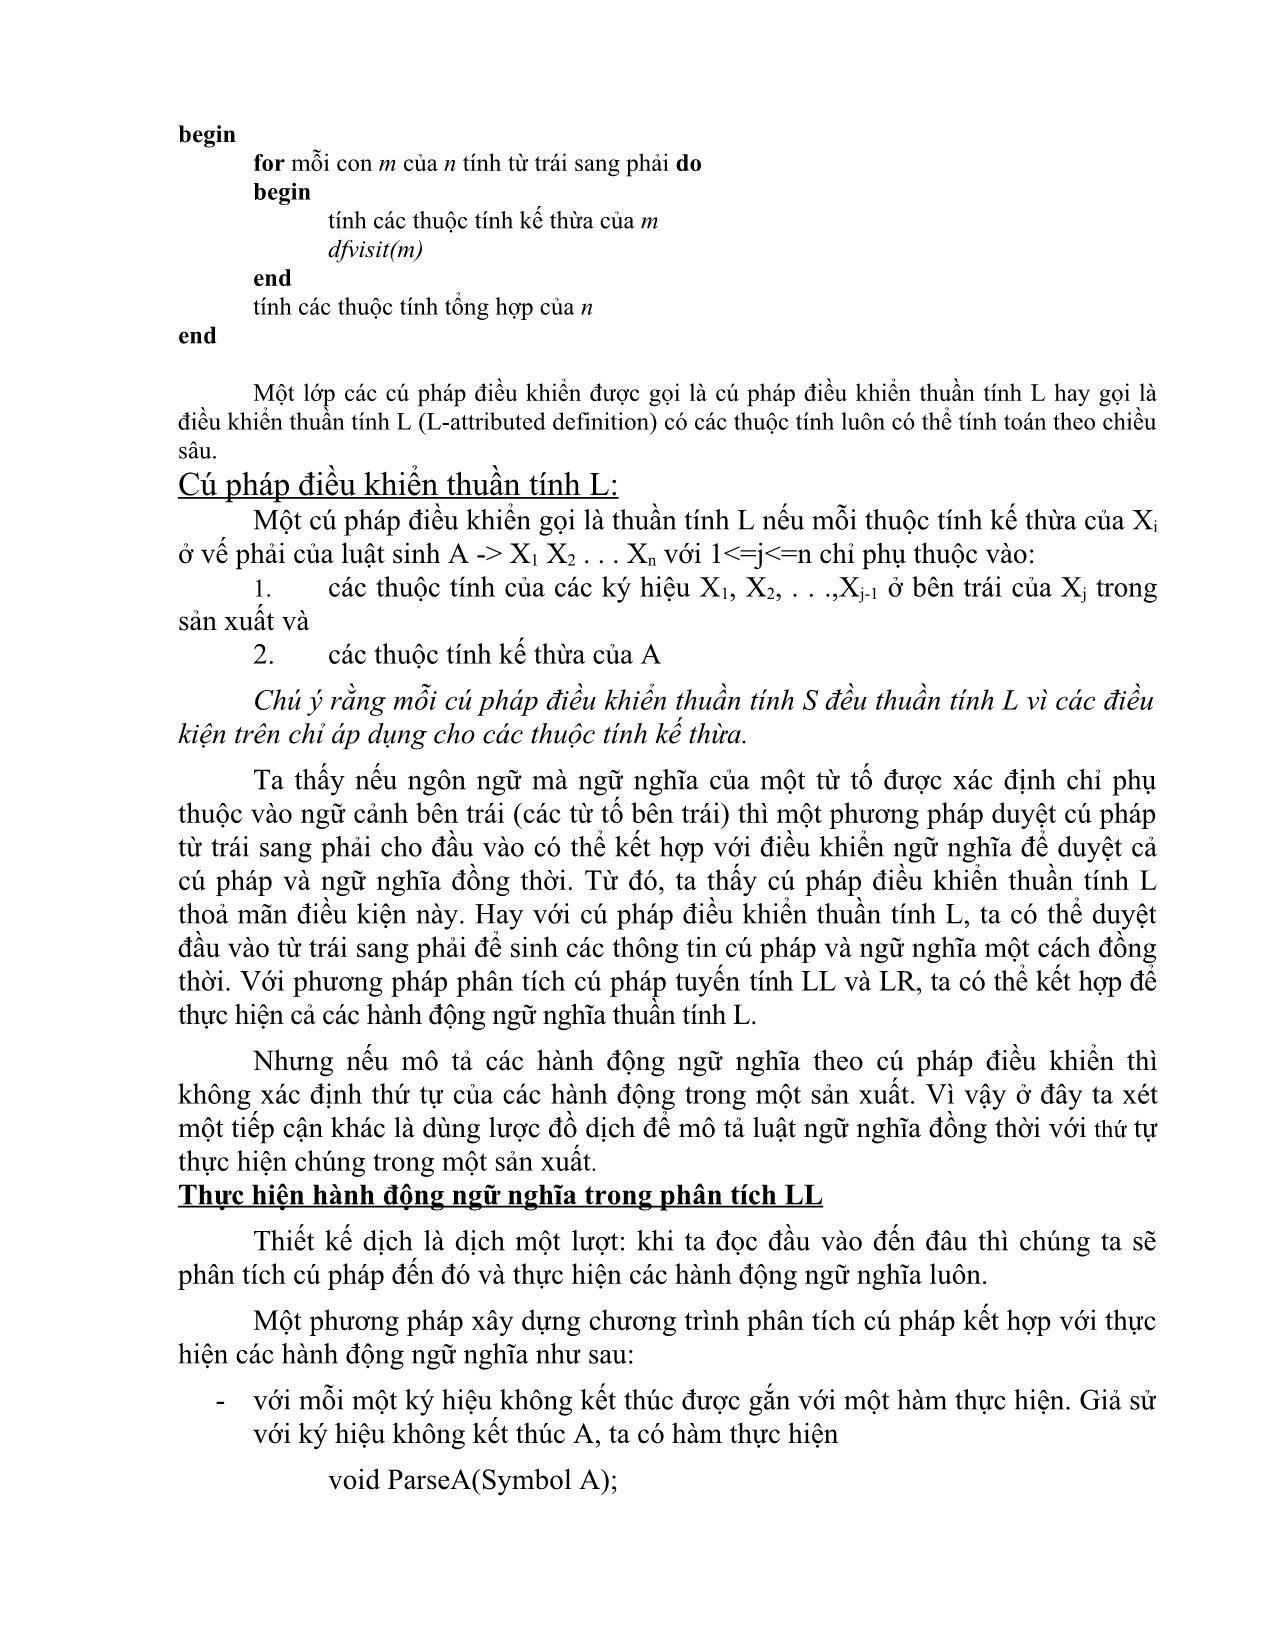 Giáo trình môn Chương trình dịch (Phần 2) trang 9